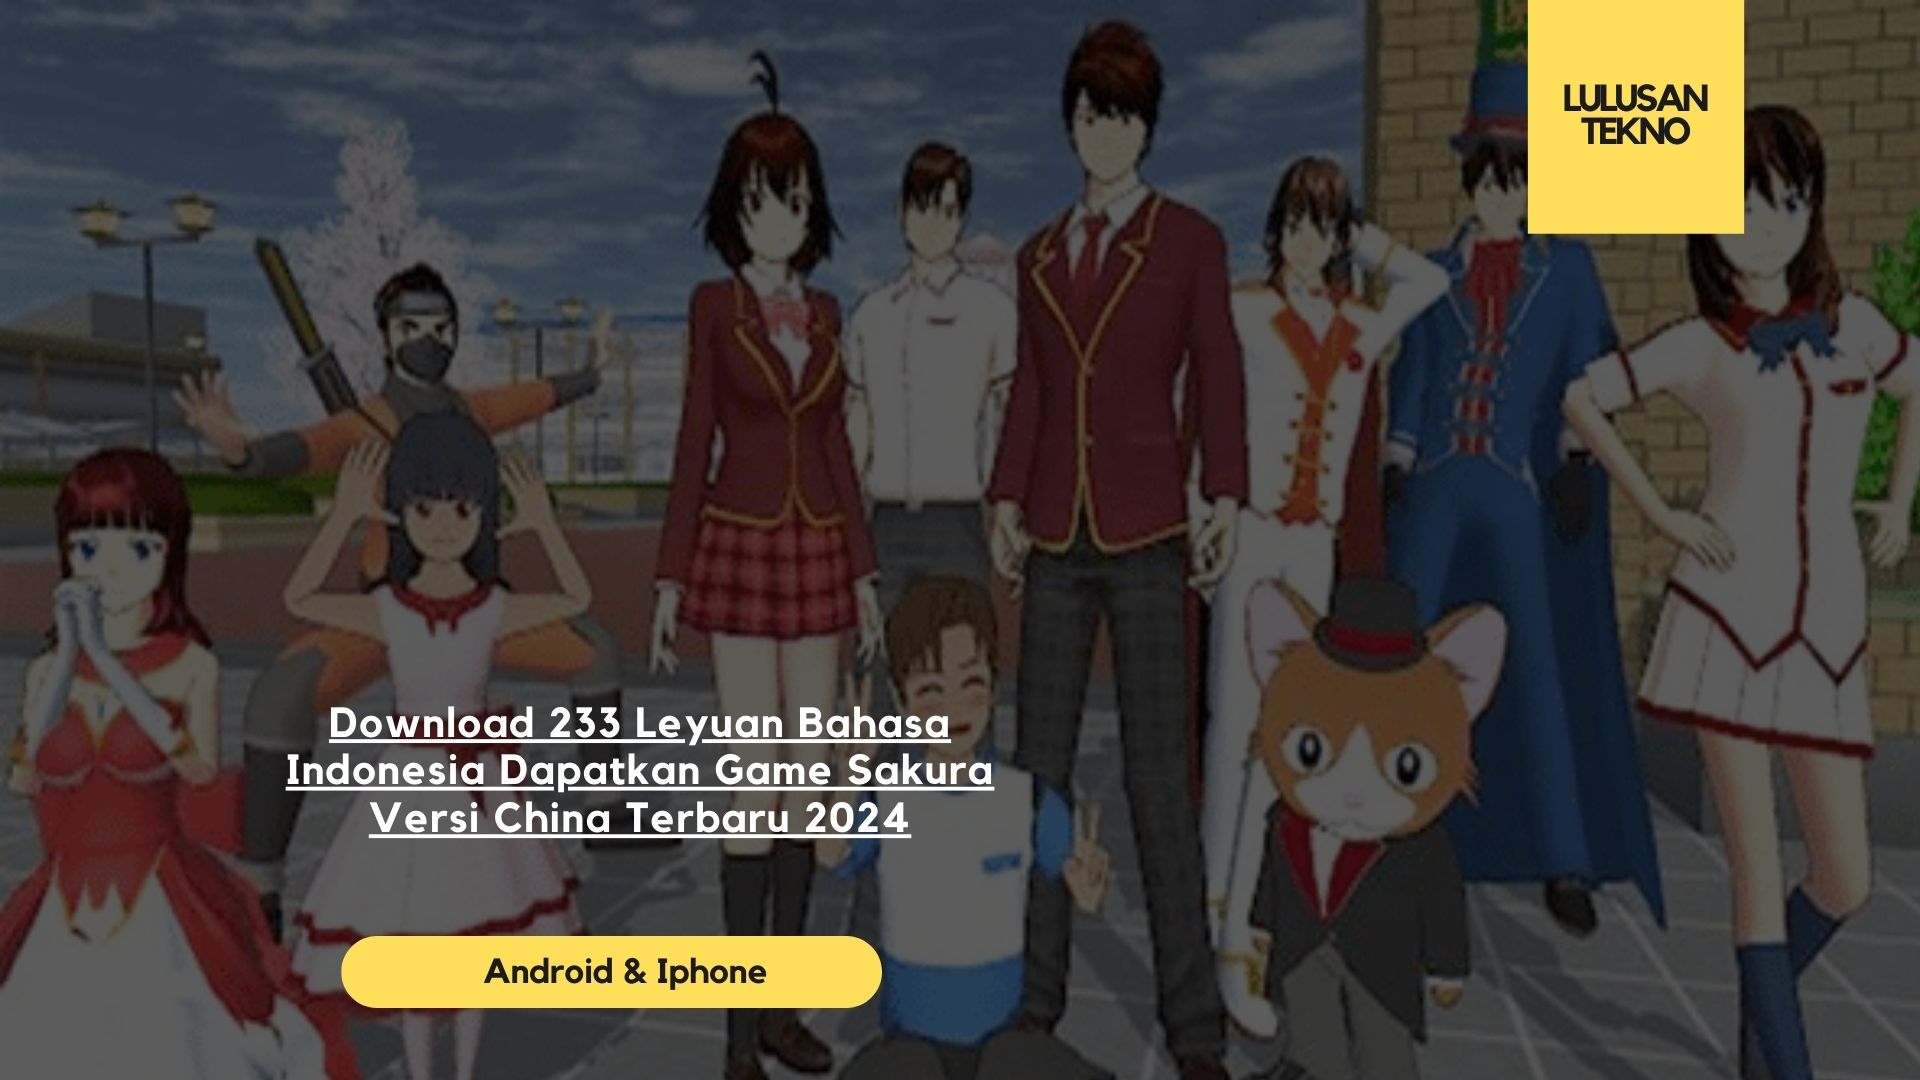 Download 233 Leyuan Bahasa Indonesia Dapatkan Game Sakura Versi China Terbaru 2024